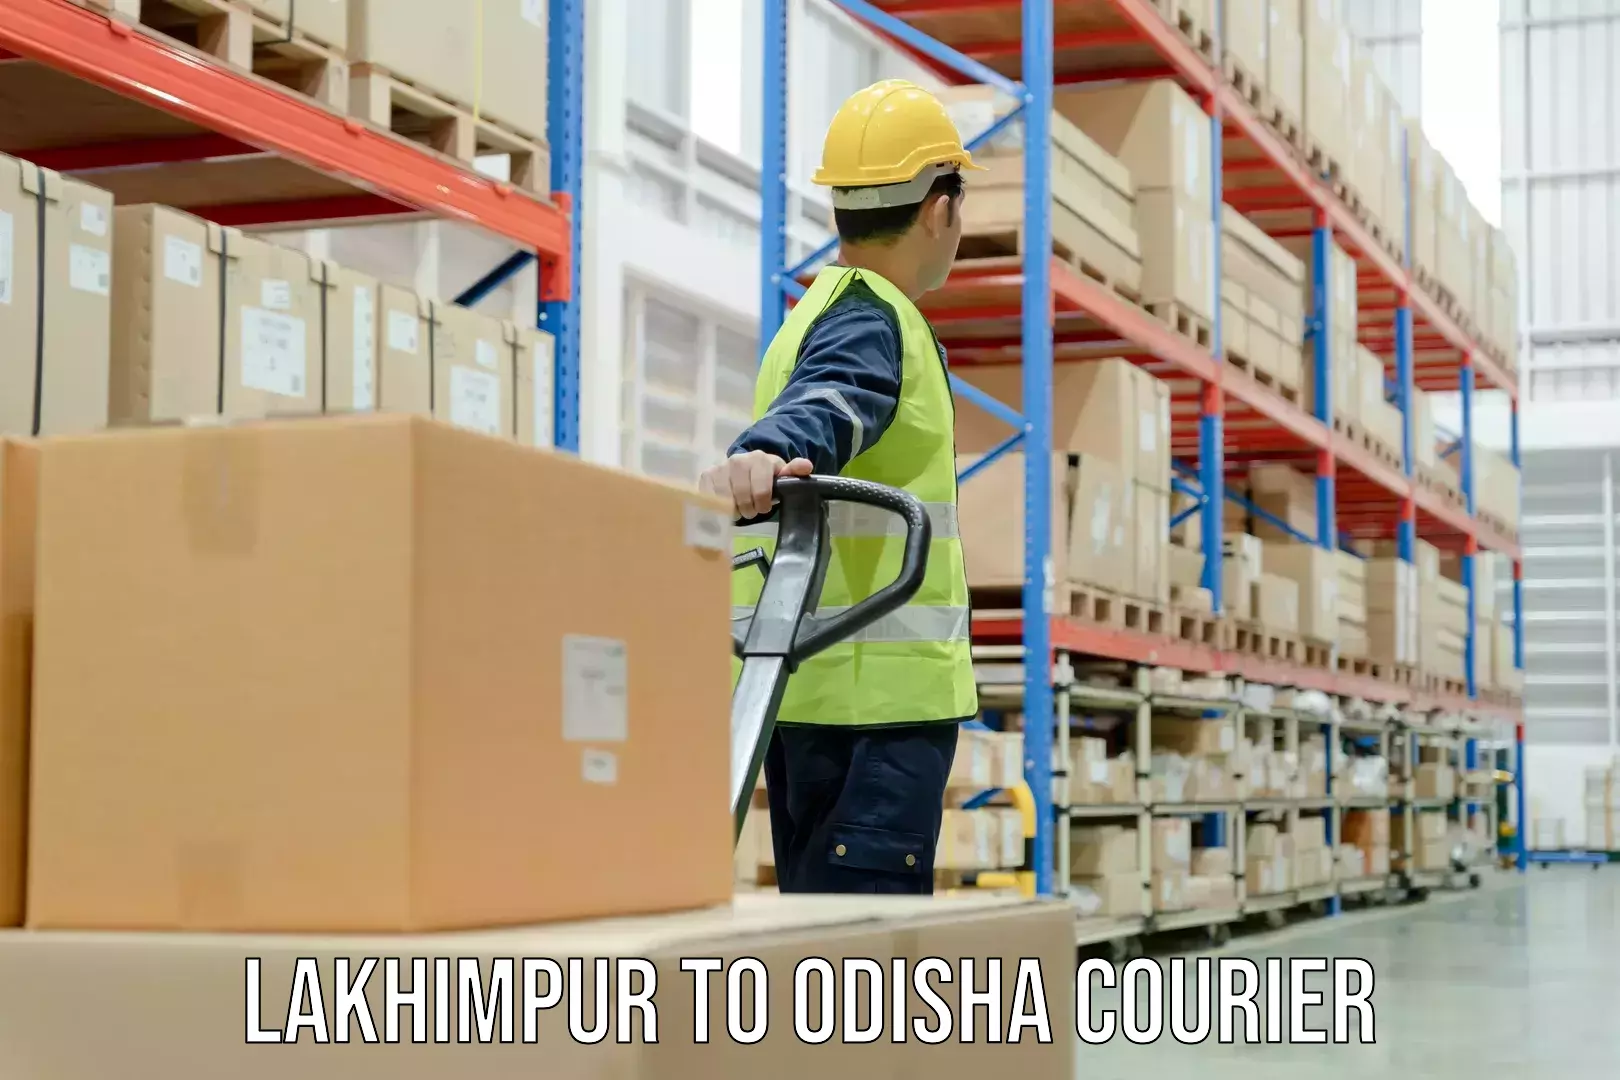 Business shipping needs Lakhimpur to Bhubaneswar